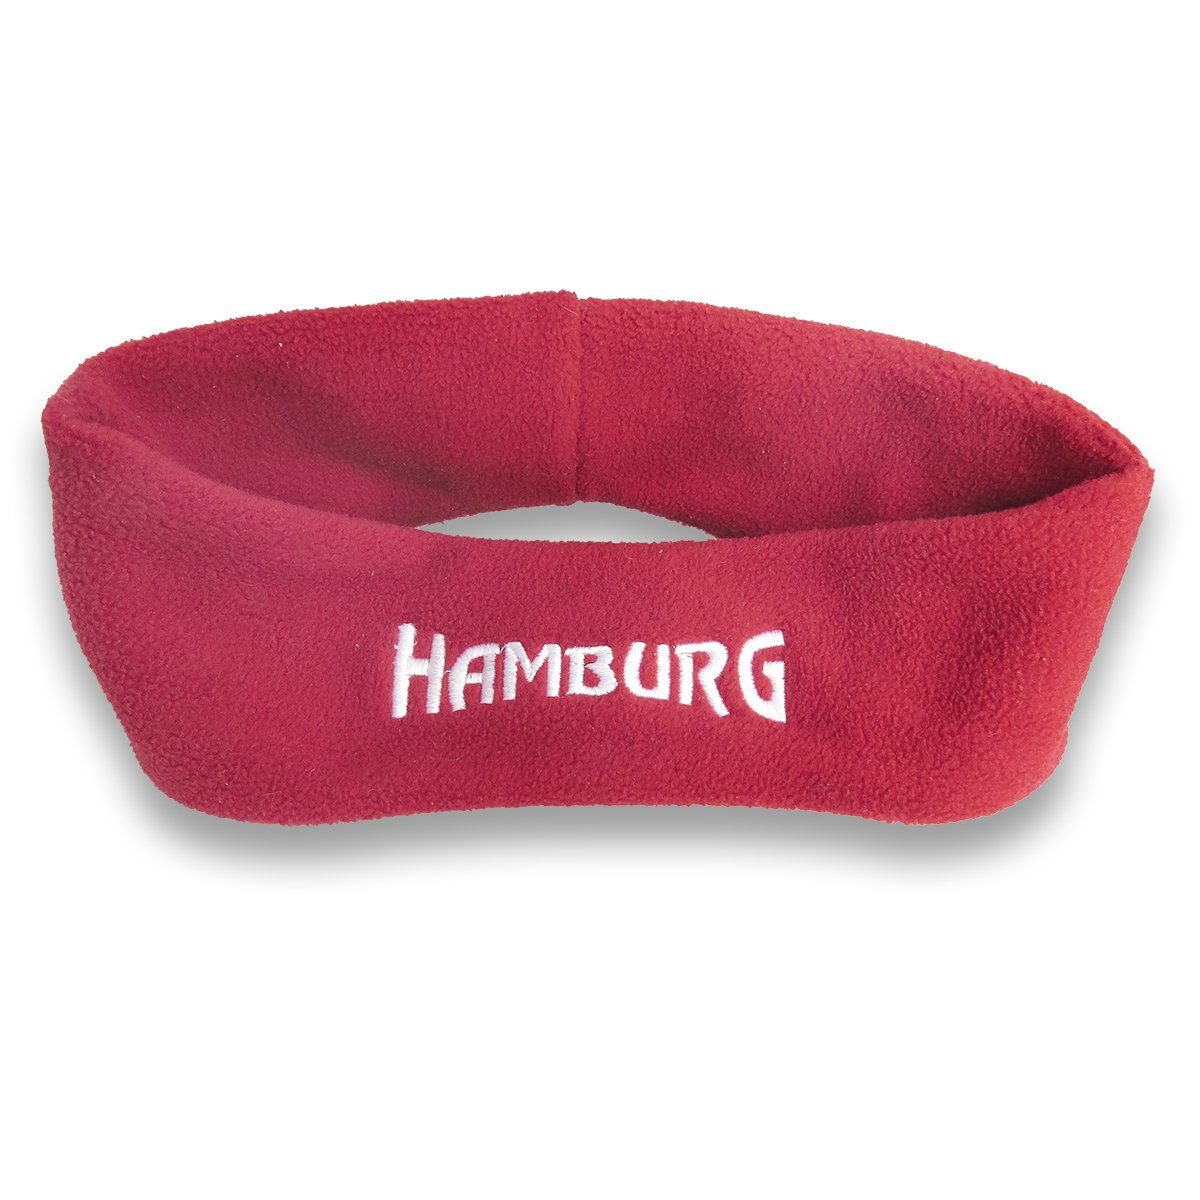 Sonia Originelli Stirnband Stirnband "Hamburg" Fleece kuschelig weich bestickt Marine, Rot